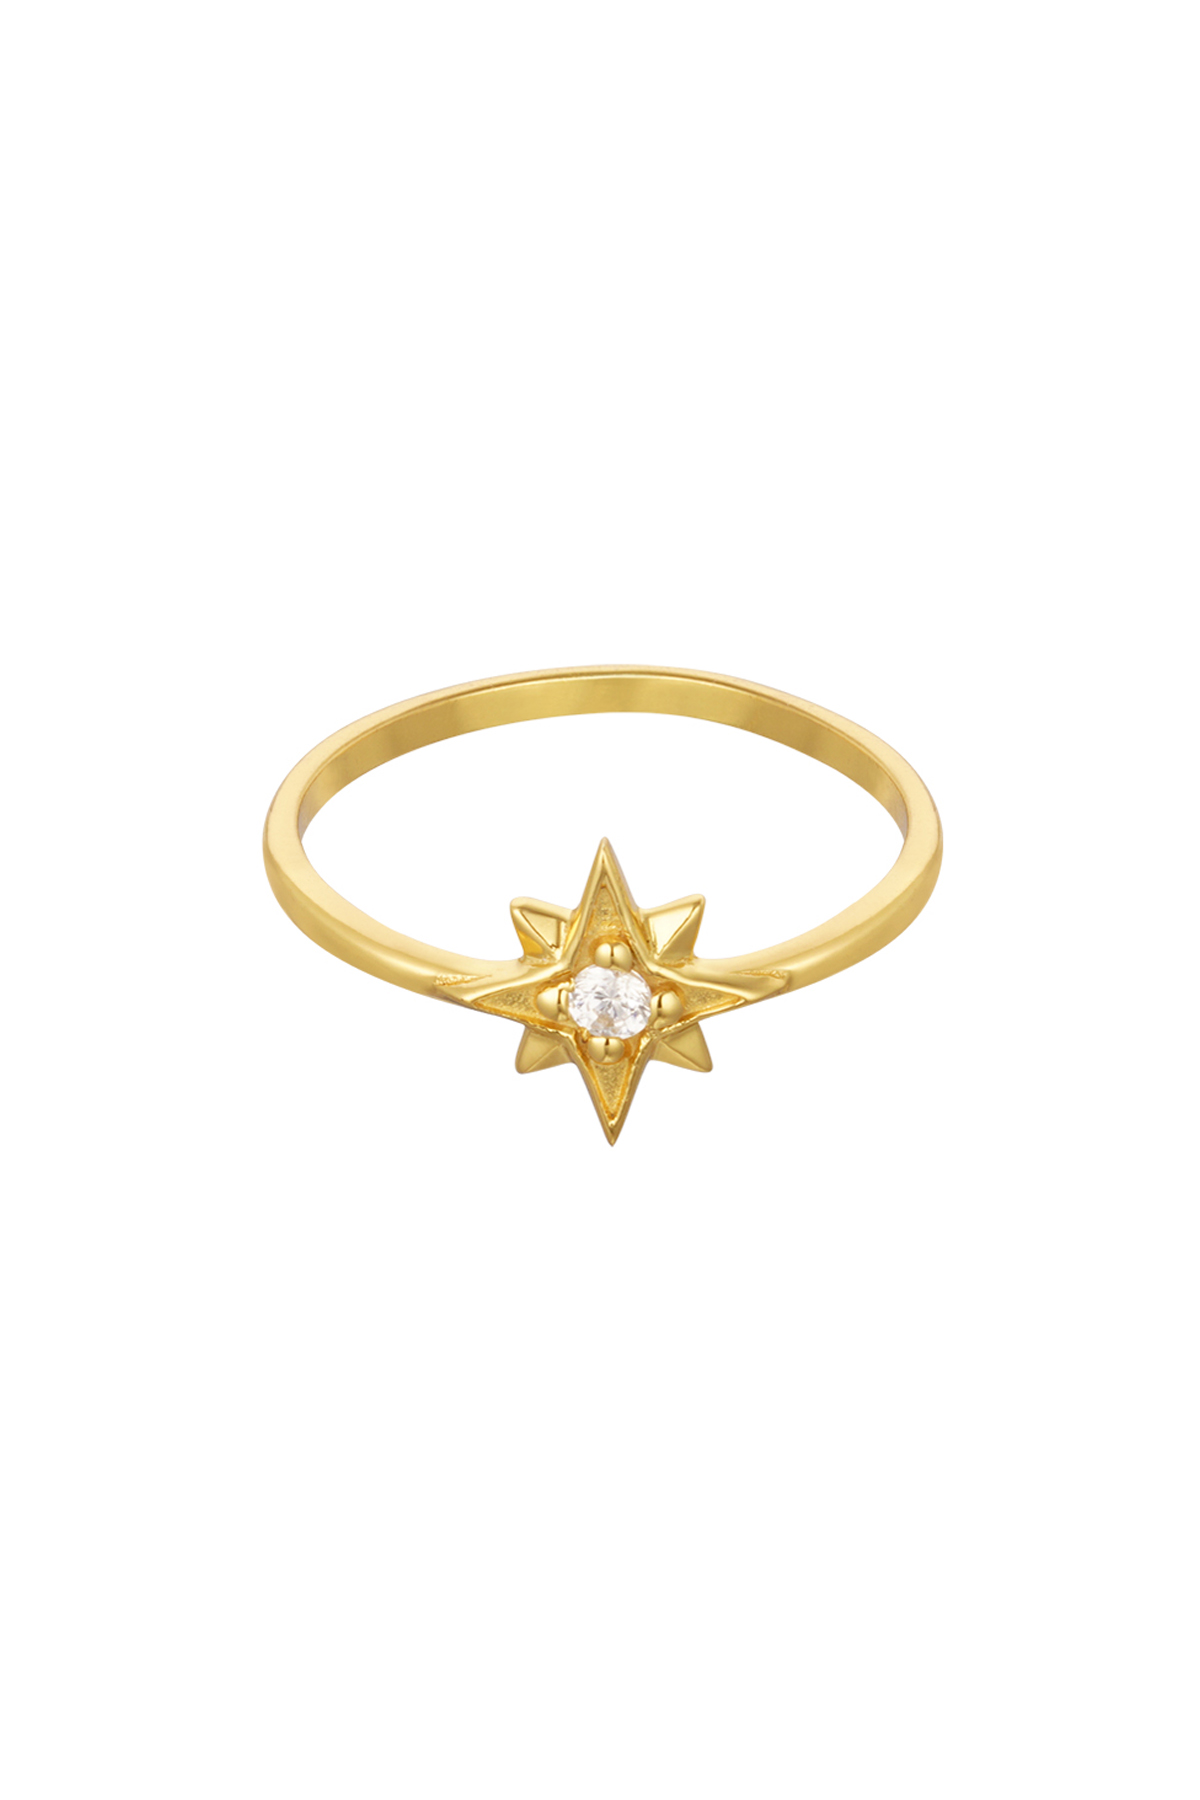 Anello doppia stella - Argento 925 - Oro - 18 